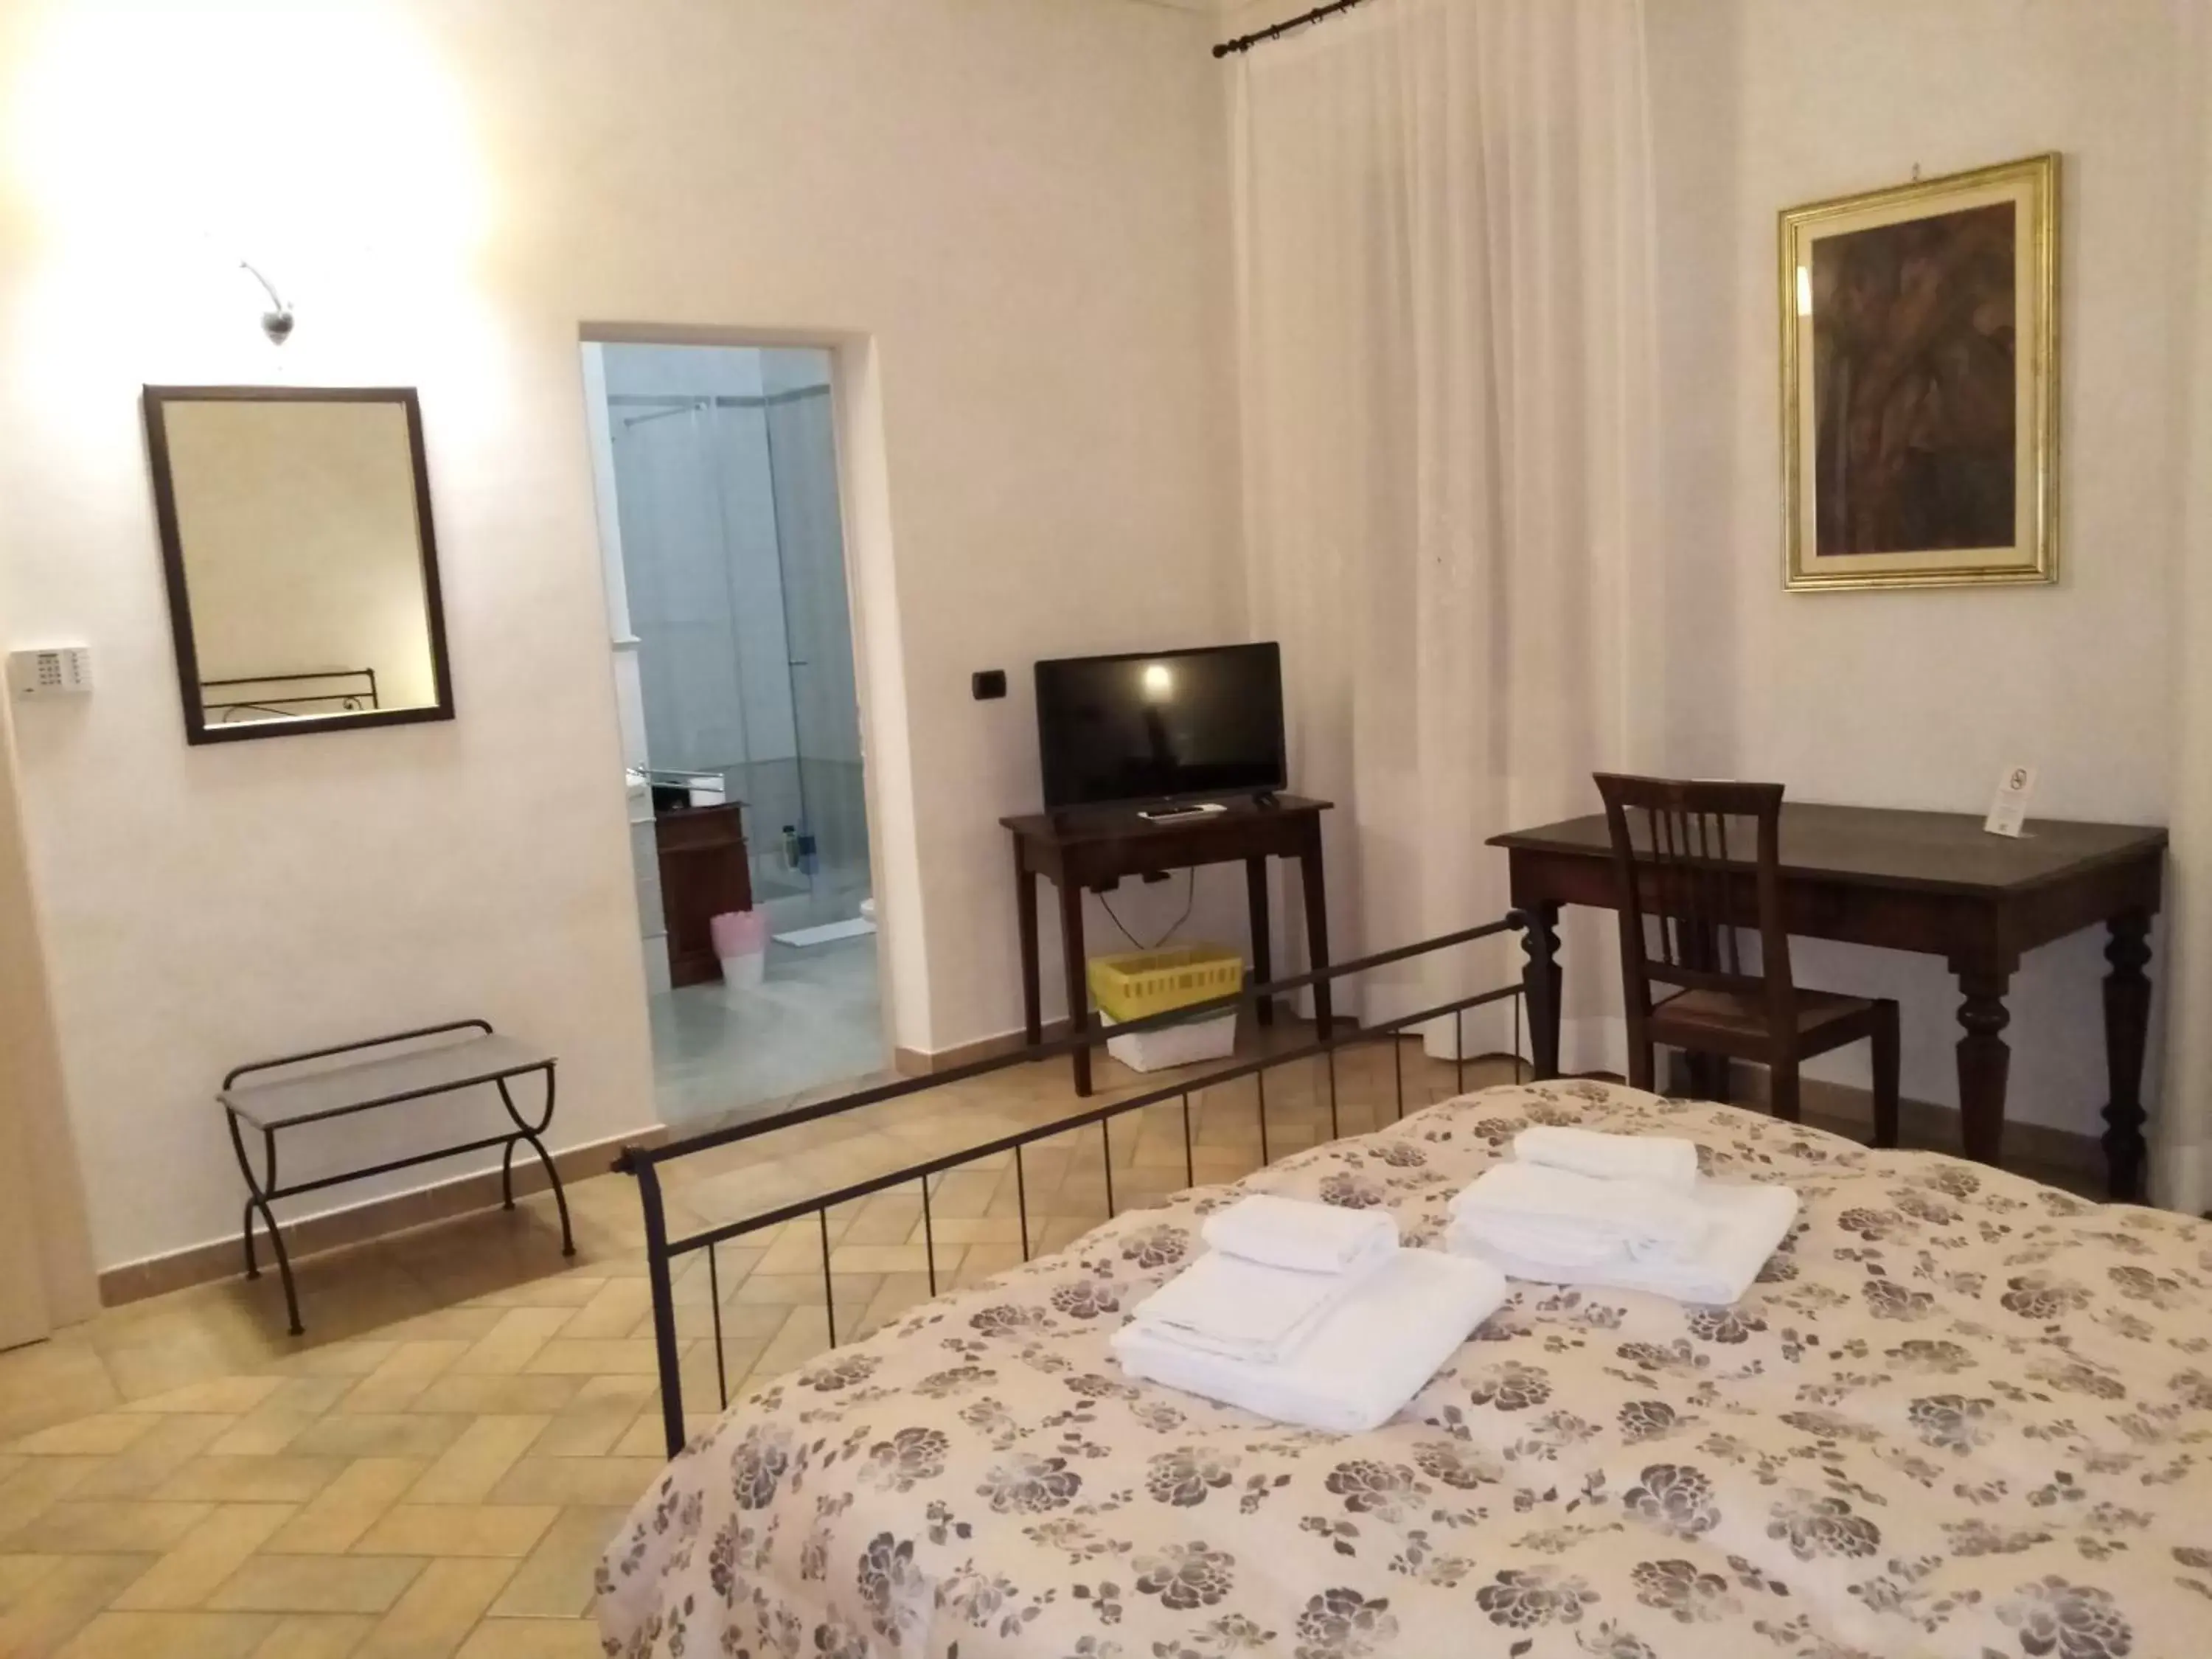 Bedroom in B&B Residence il Ciliegio , Via Villa Superiore 93 Luzzara